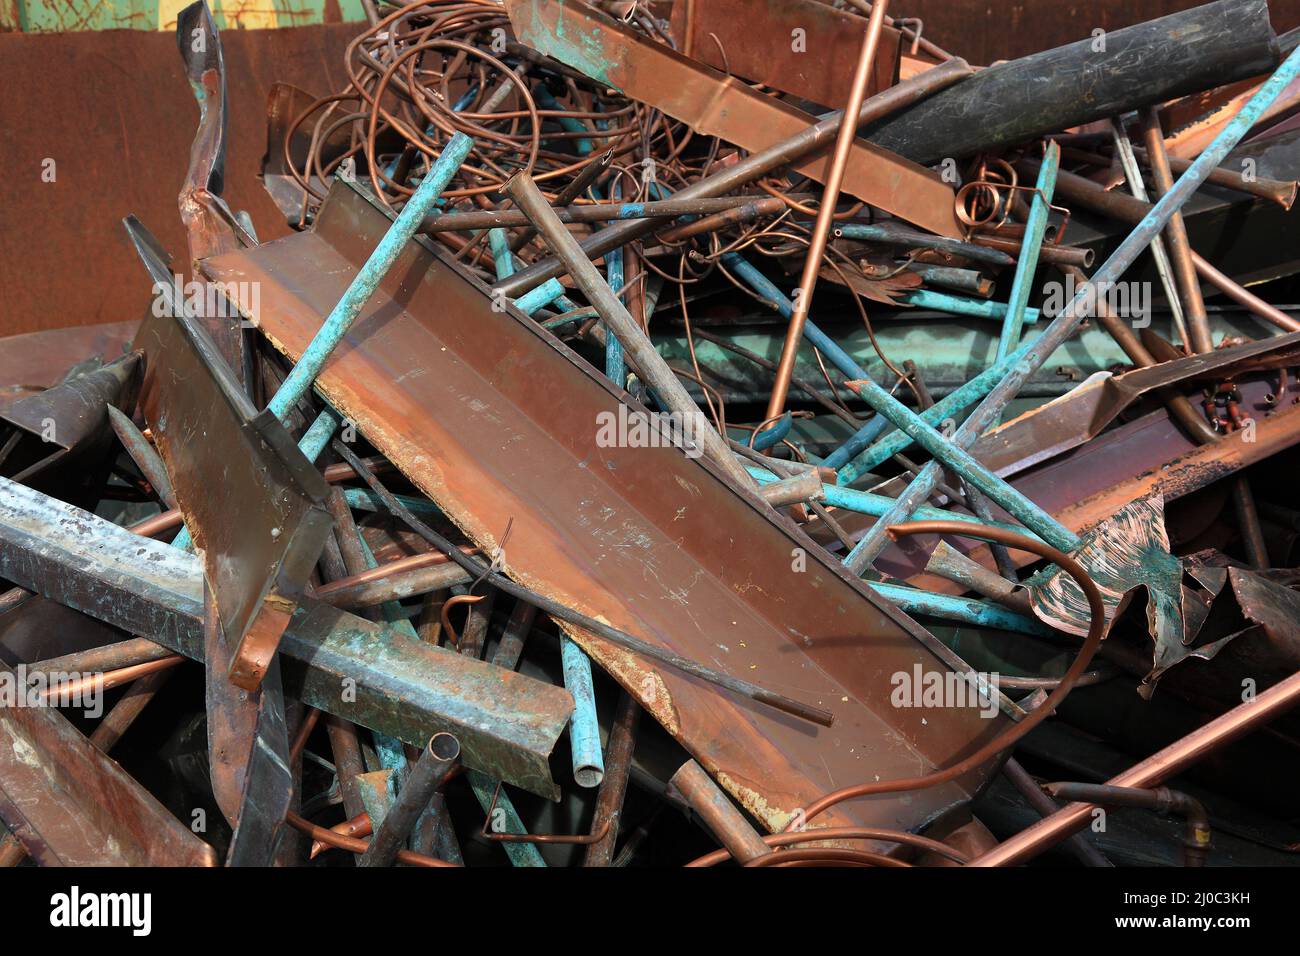 Schrott und Metallabfälle aus Kupfer, auf einer Halde in einem Recyclingbetrieb  /  Rusted iron waste on a stockpile in a recycling plant, copper Stock Photo